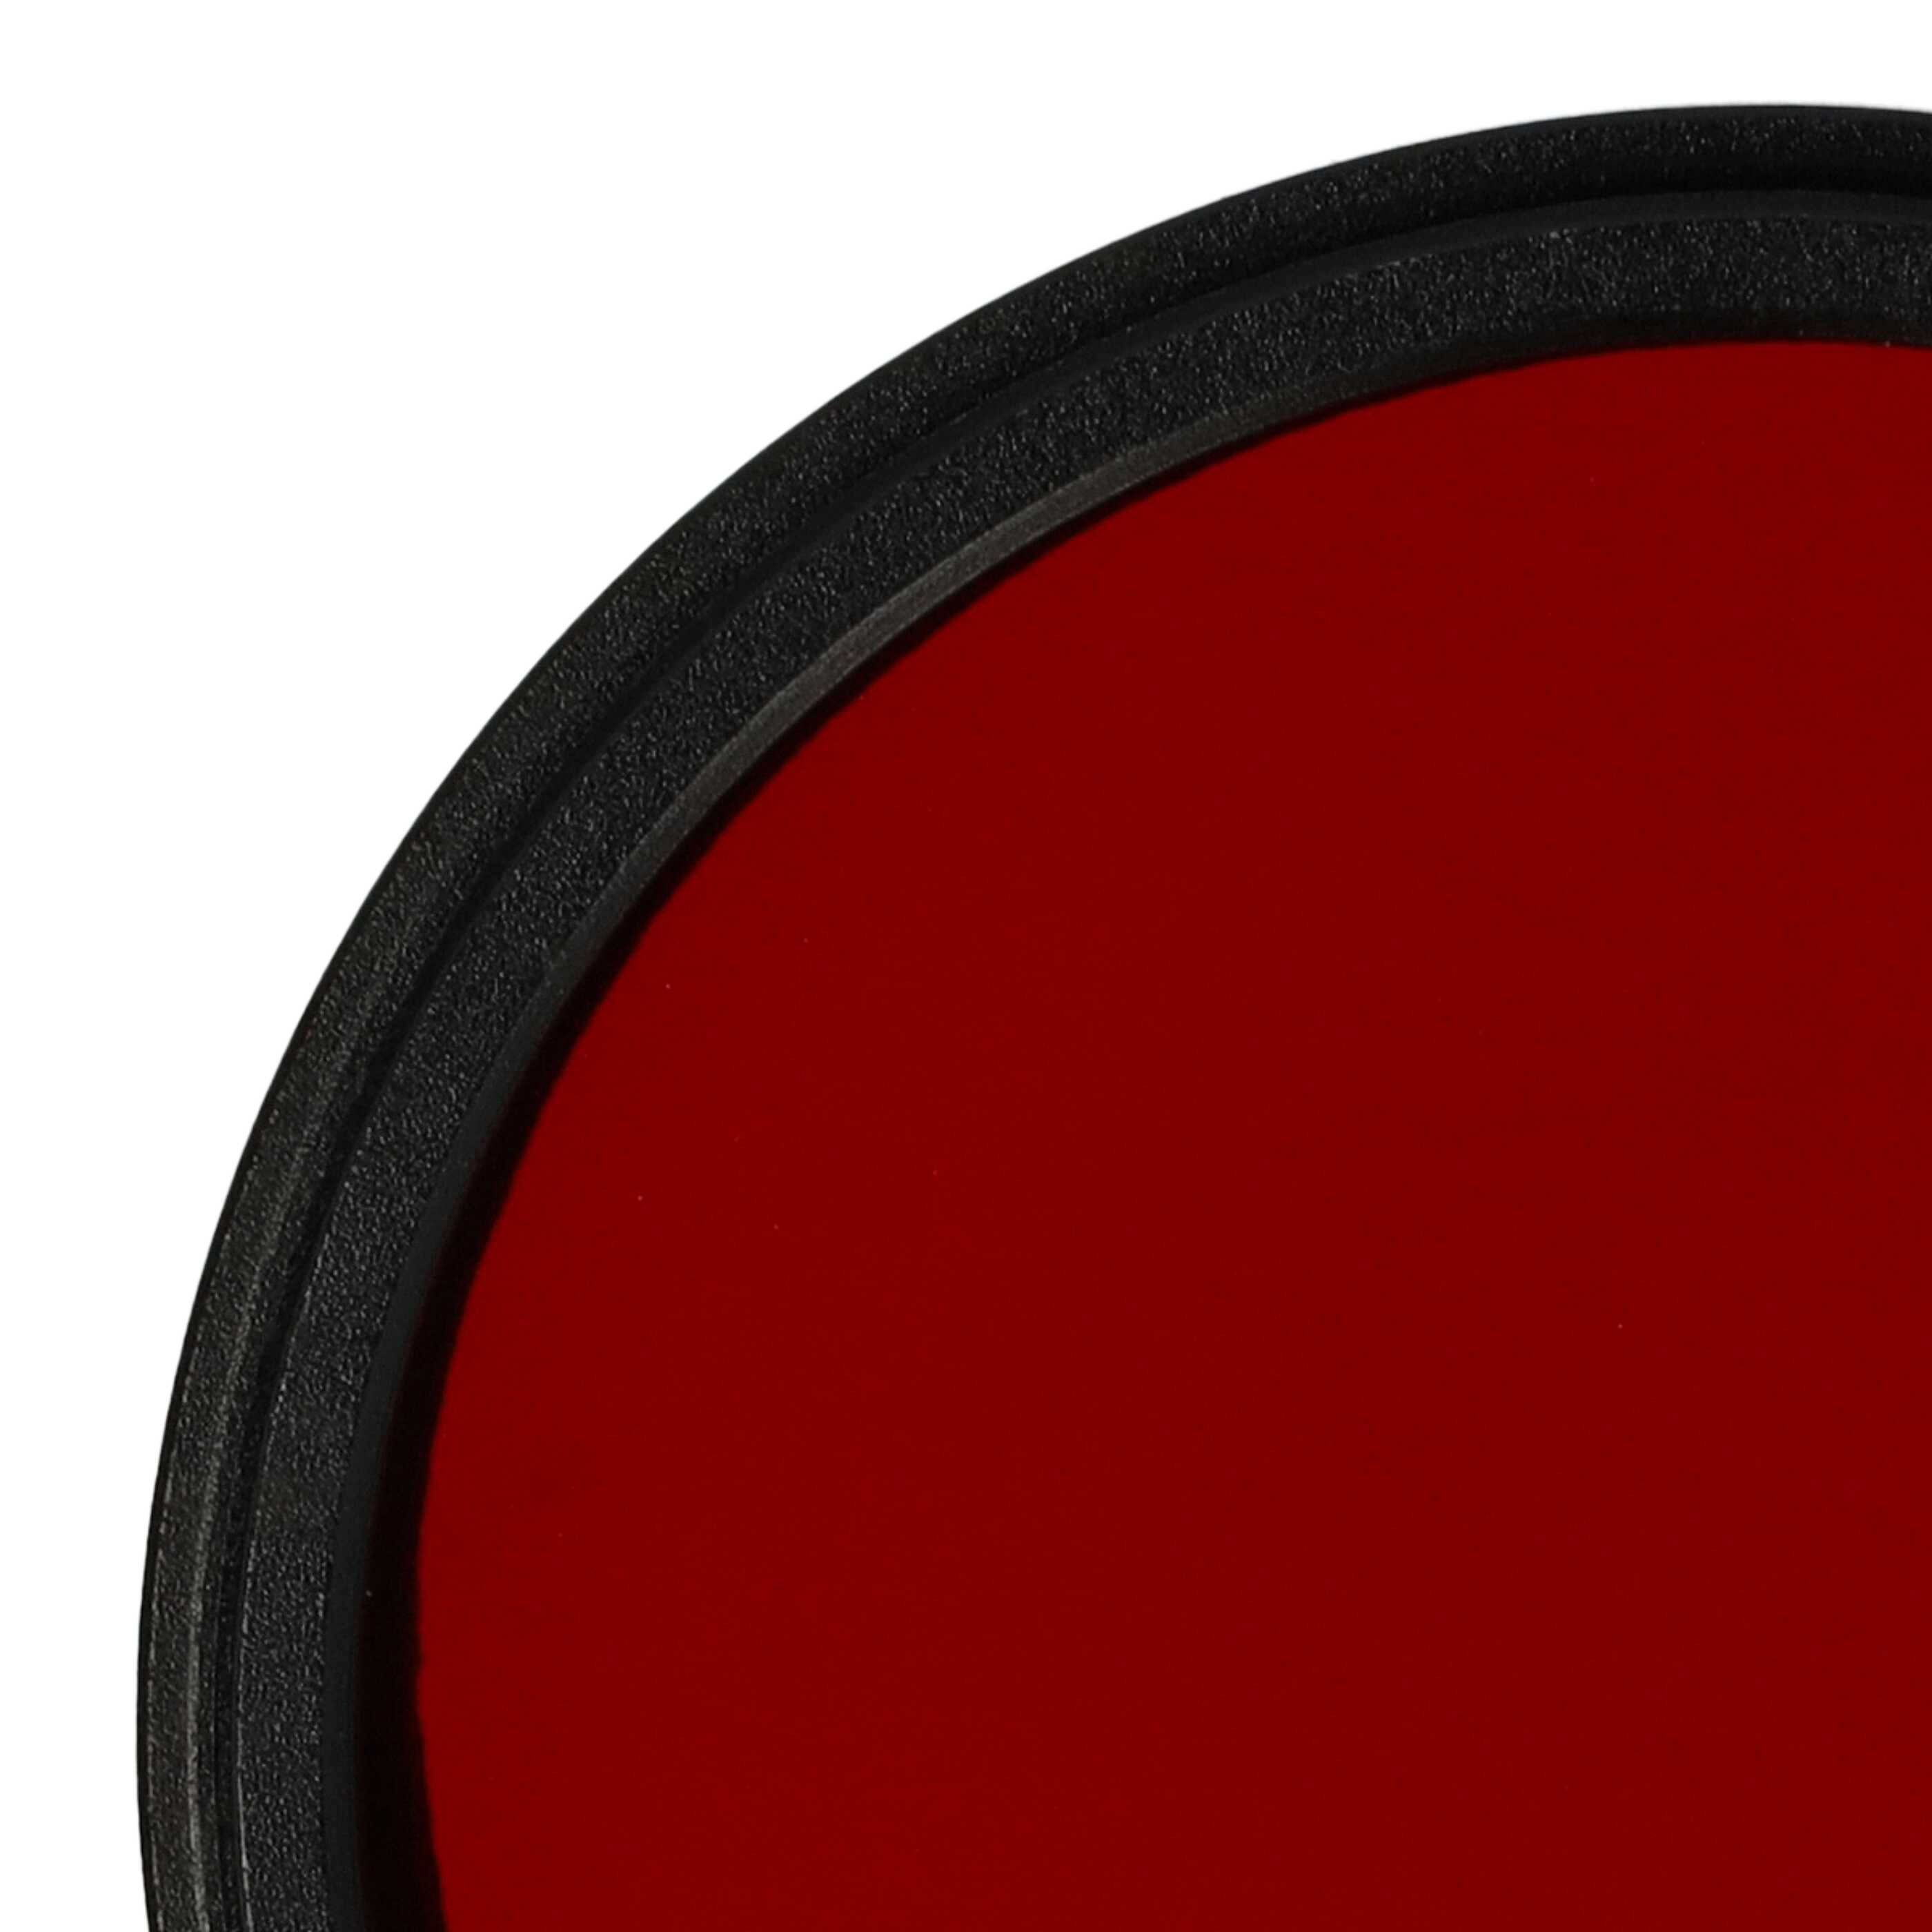 Filtro de color para objetivo de cámara con rosca de filtro de 49 mm - Filtro rojo